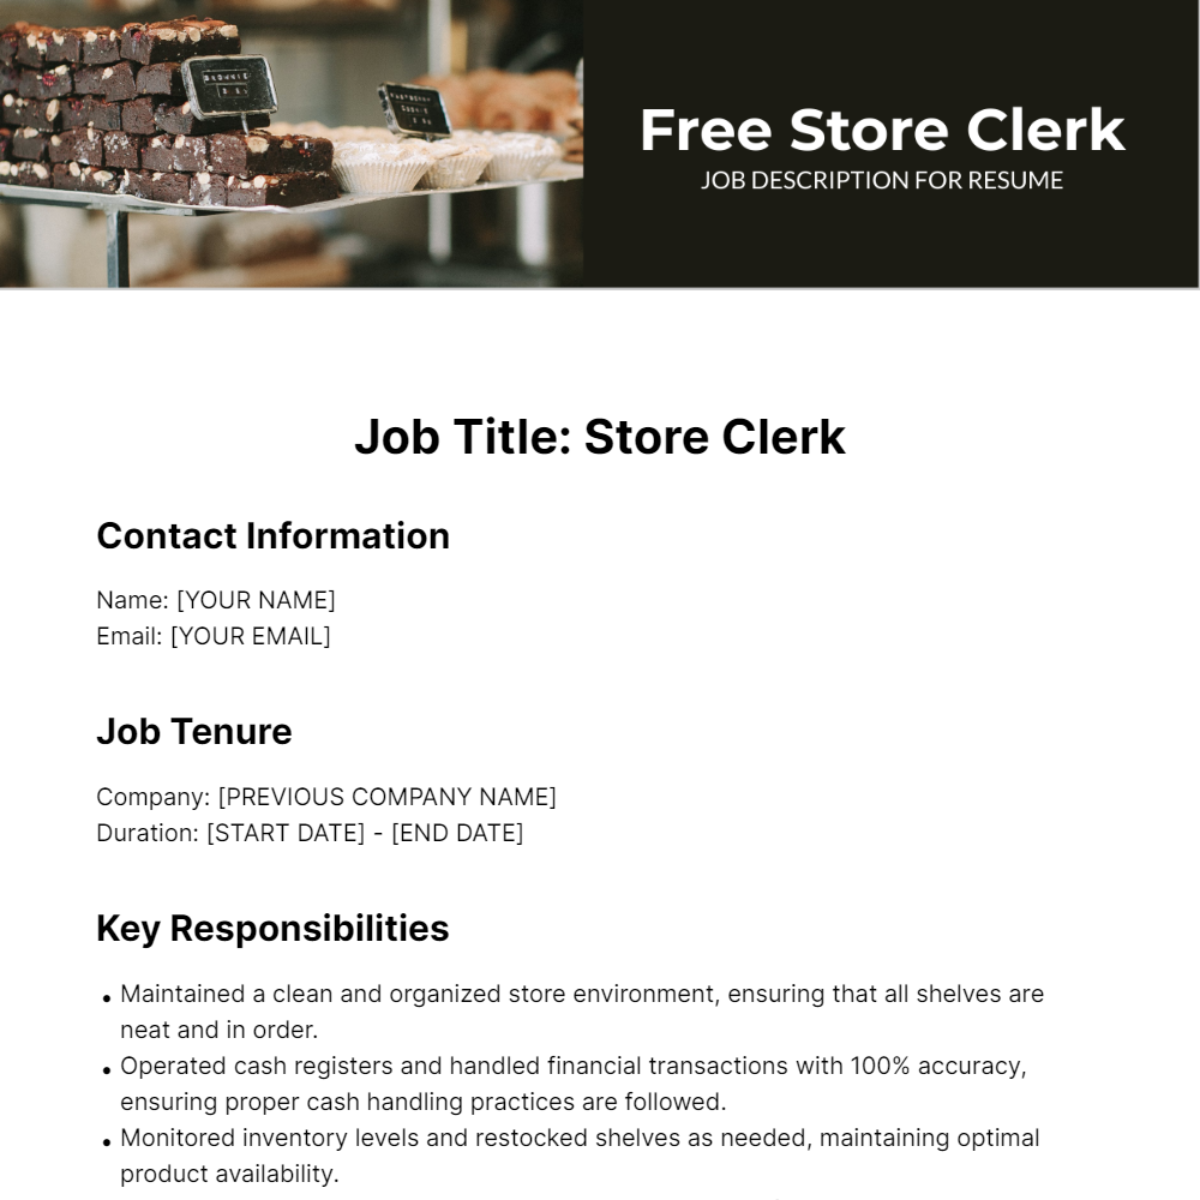 Store Clerk Job Description for Resume Template